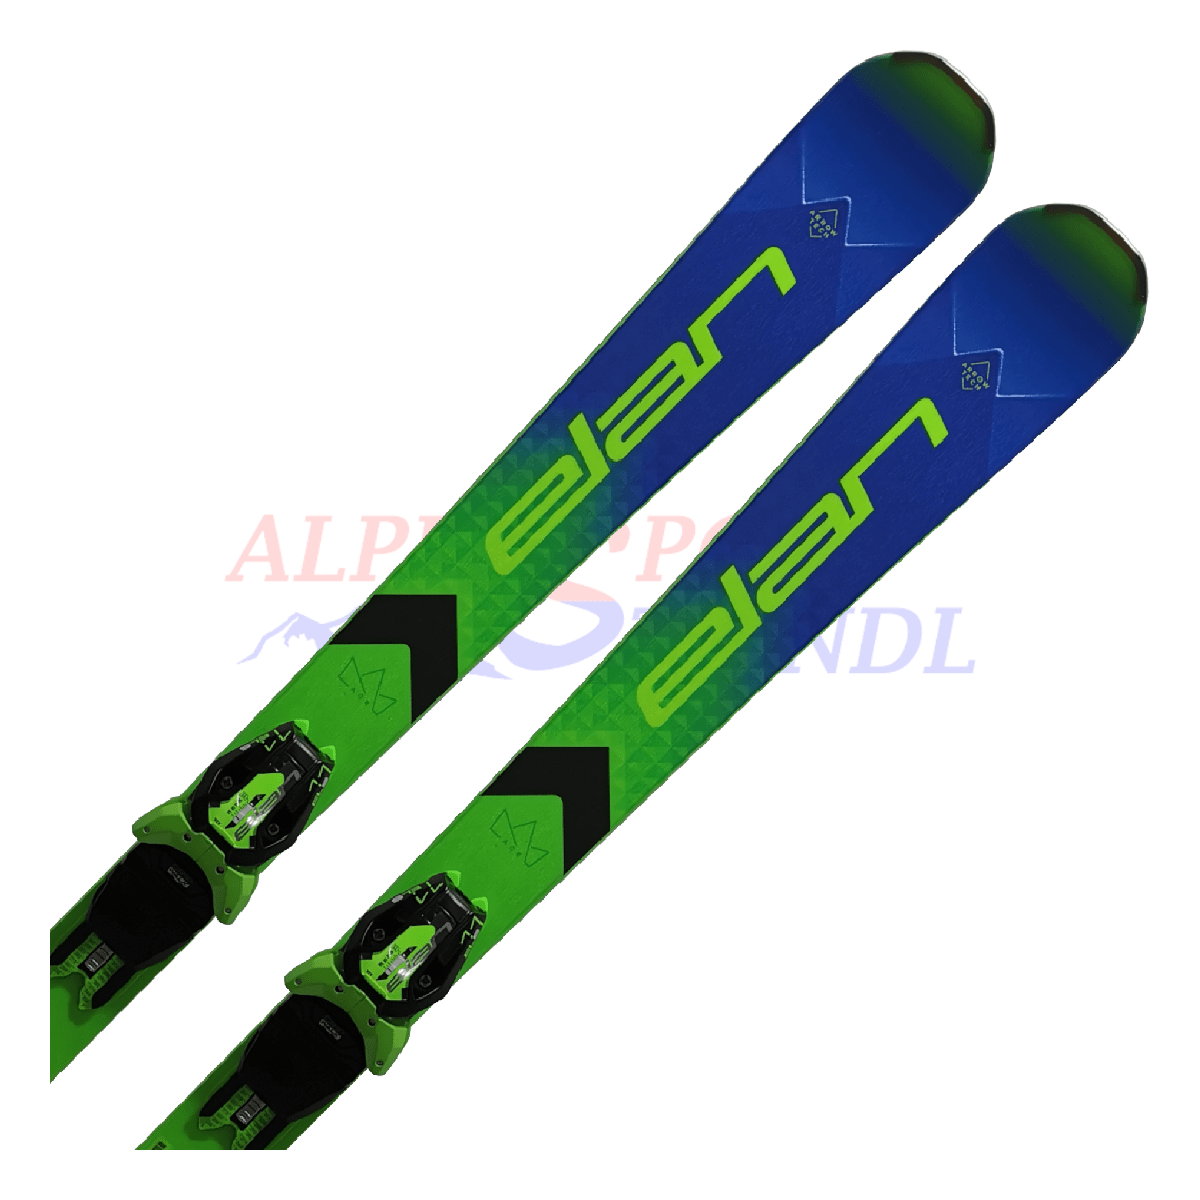 Elan ACE SLX Pro PowerShift aus dem Jahre 2023/24 in der Farbe Blau-Grün, Ansicht des oberen Teils des Skis